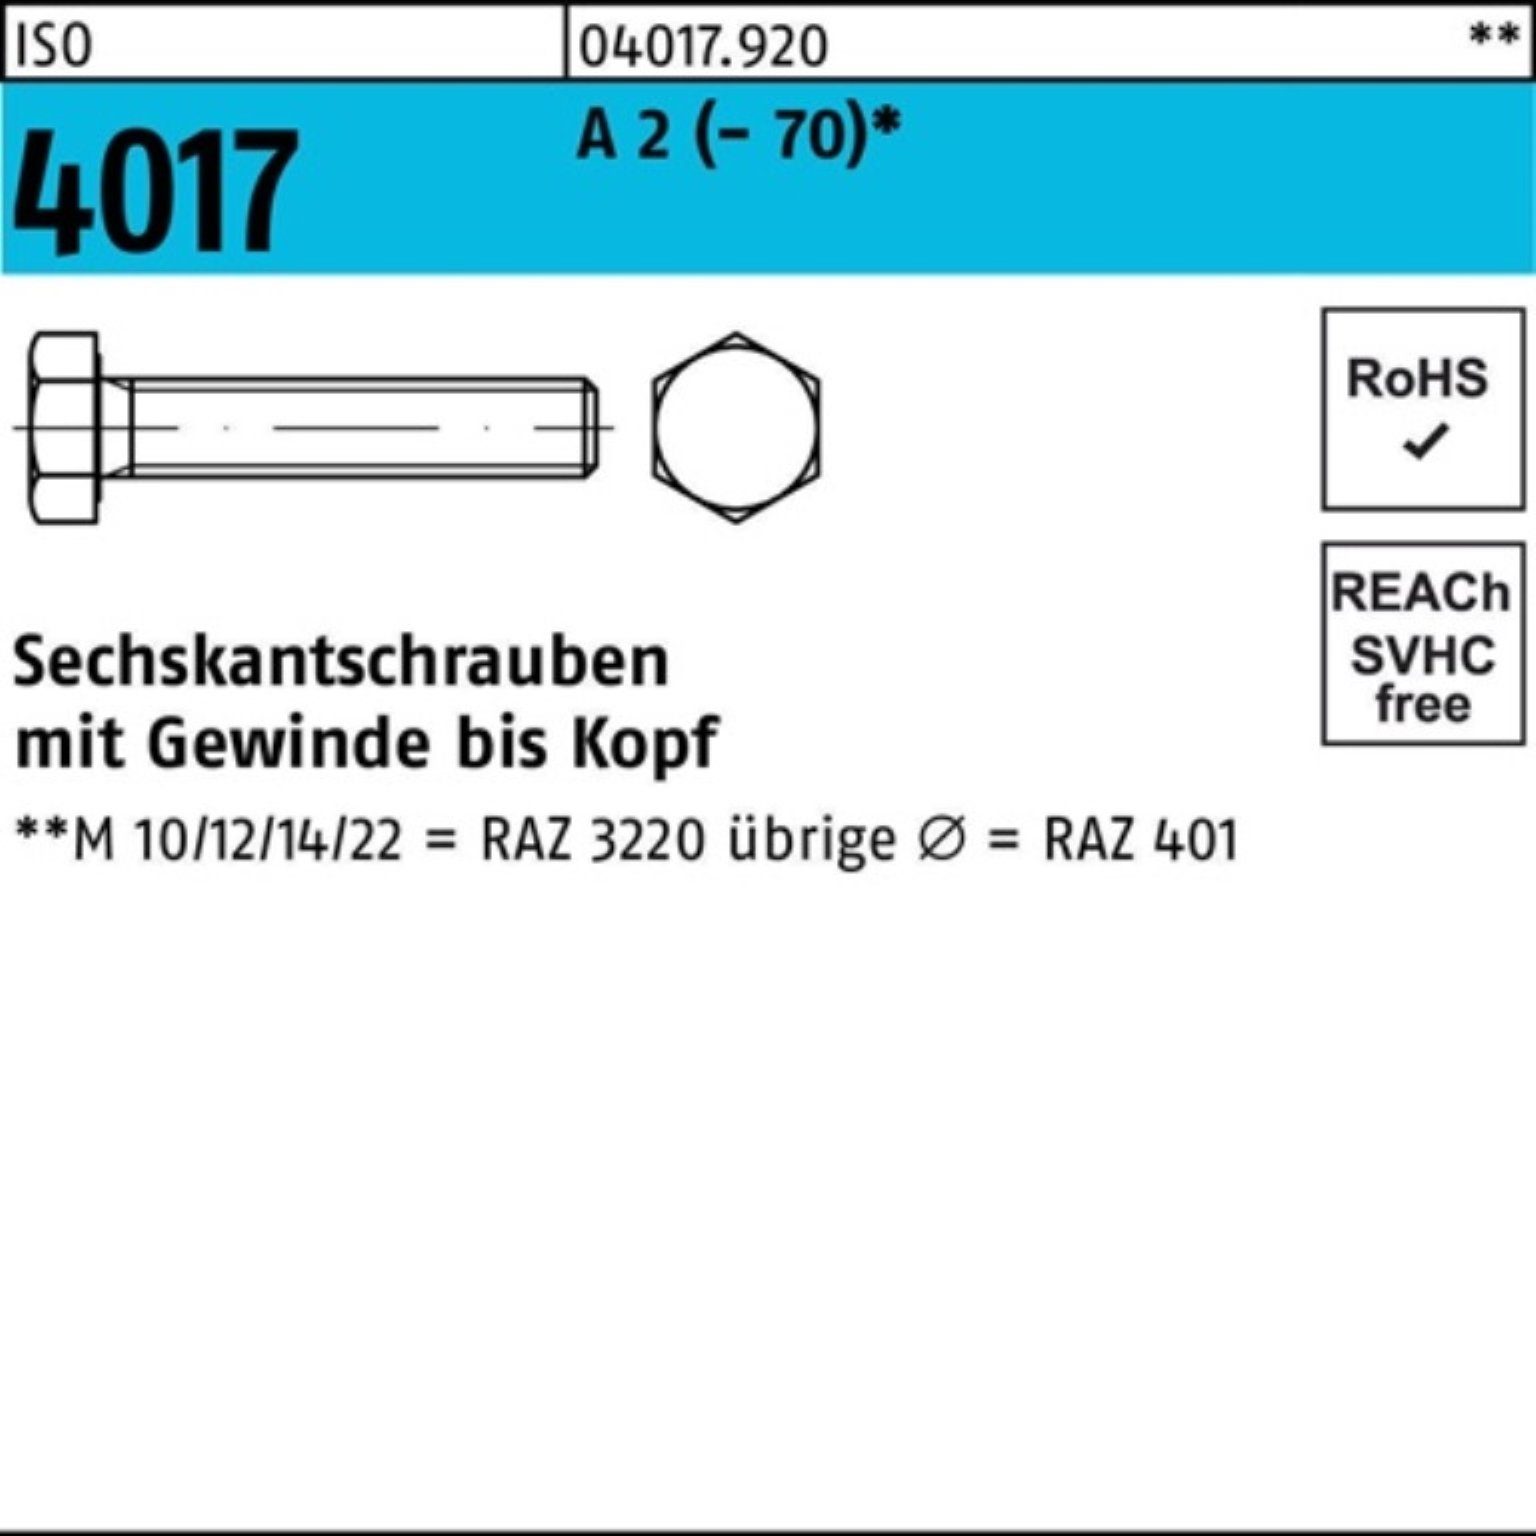 Bufab Sechskantschraube 100er M16x 40 4017 Sechskantschraube A (70) Stück 2 Pack VG ISO 50